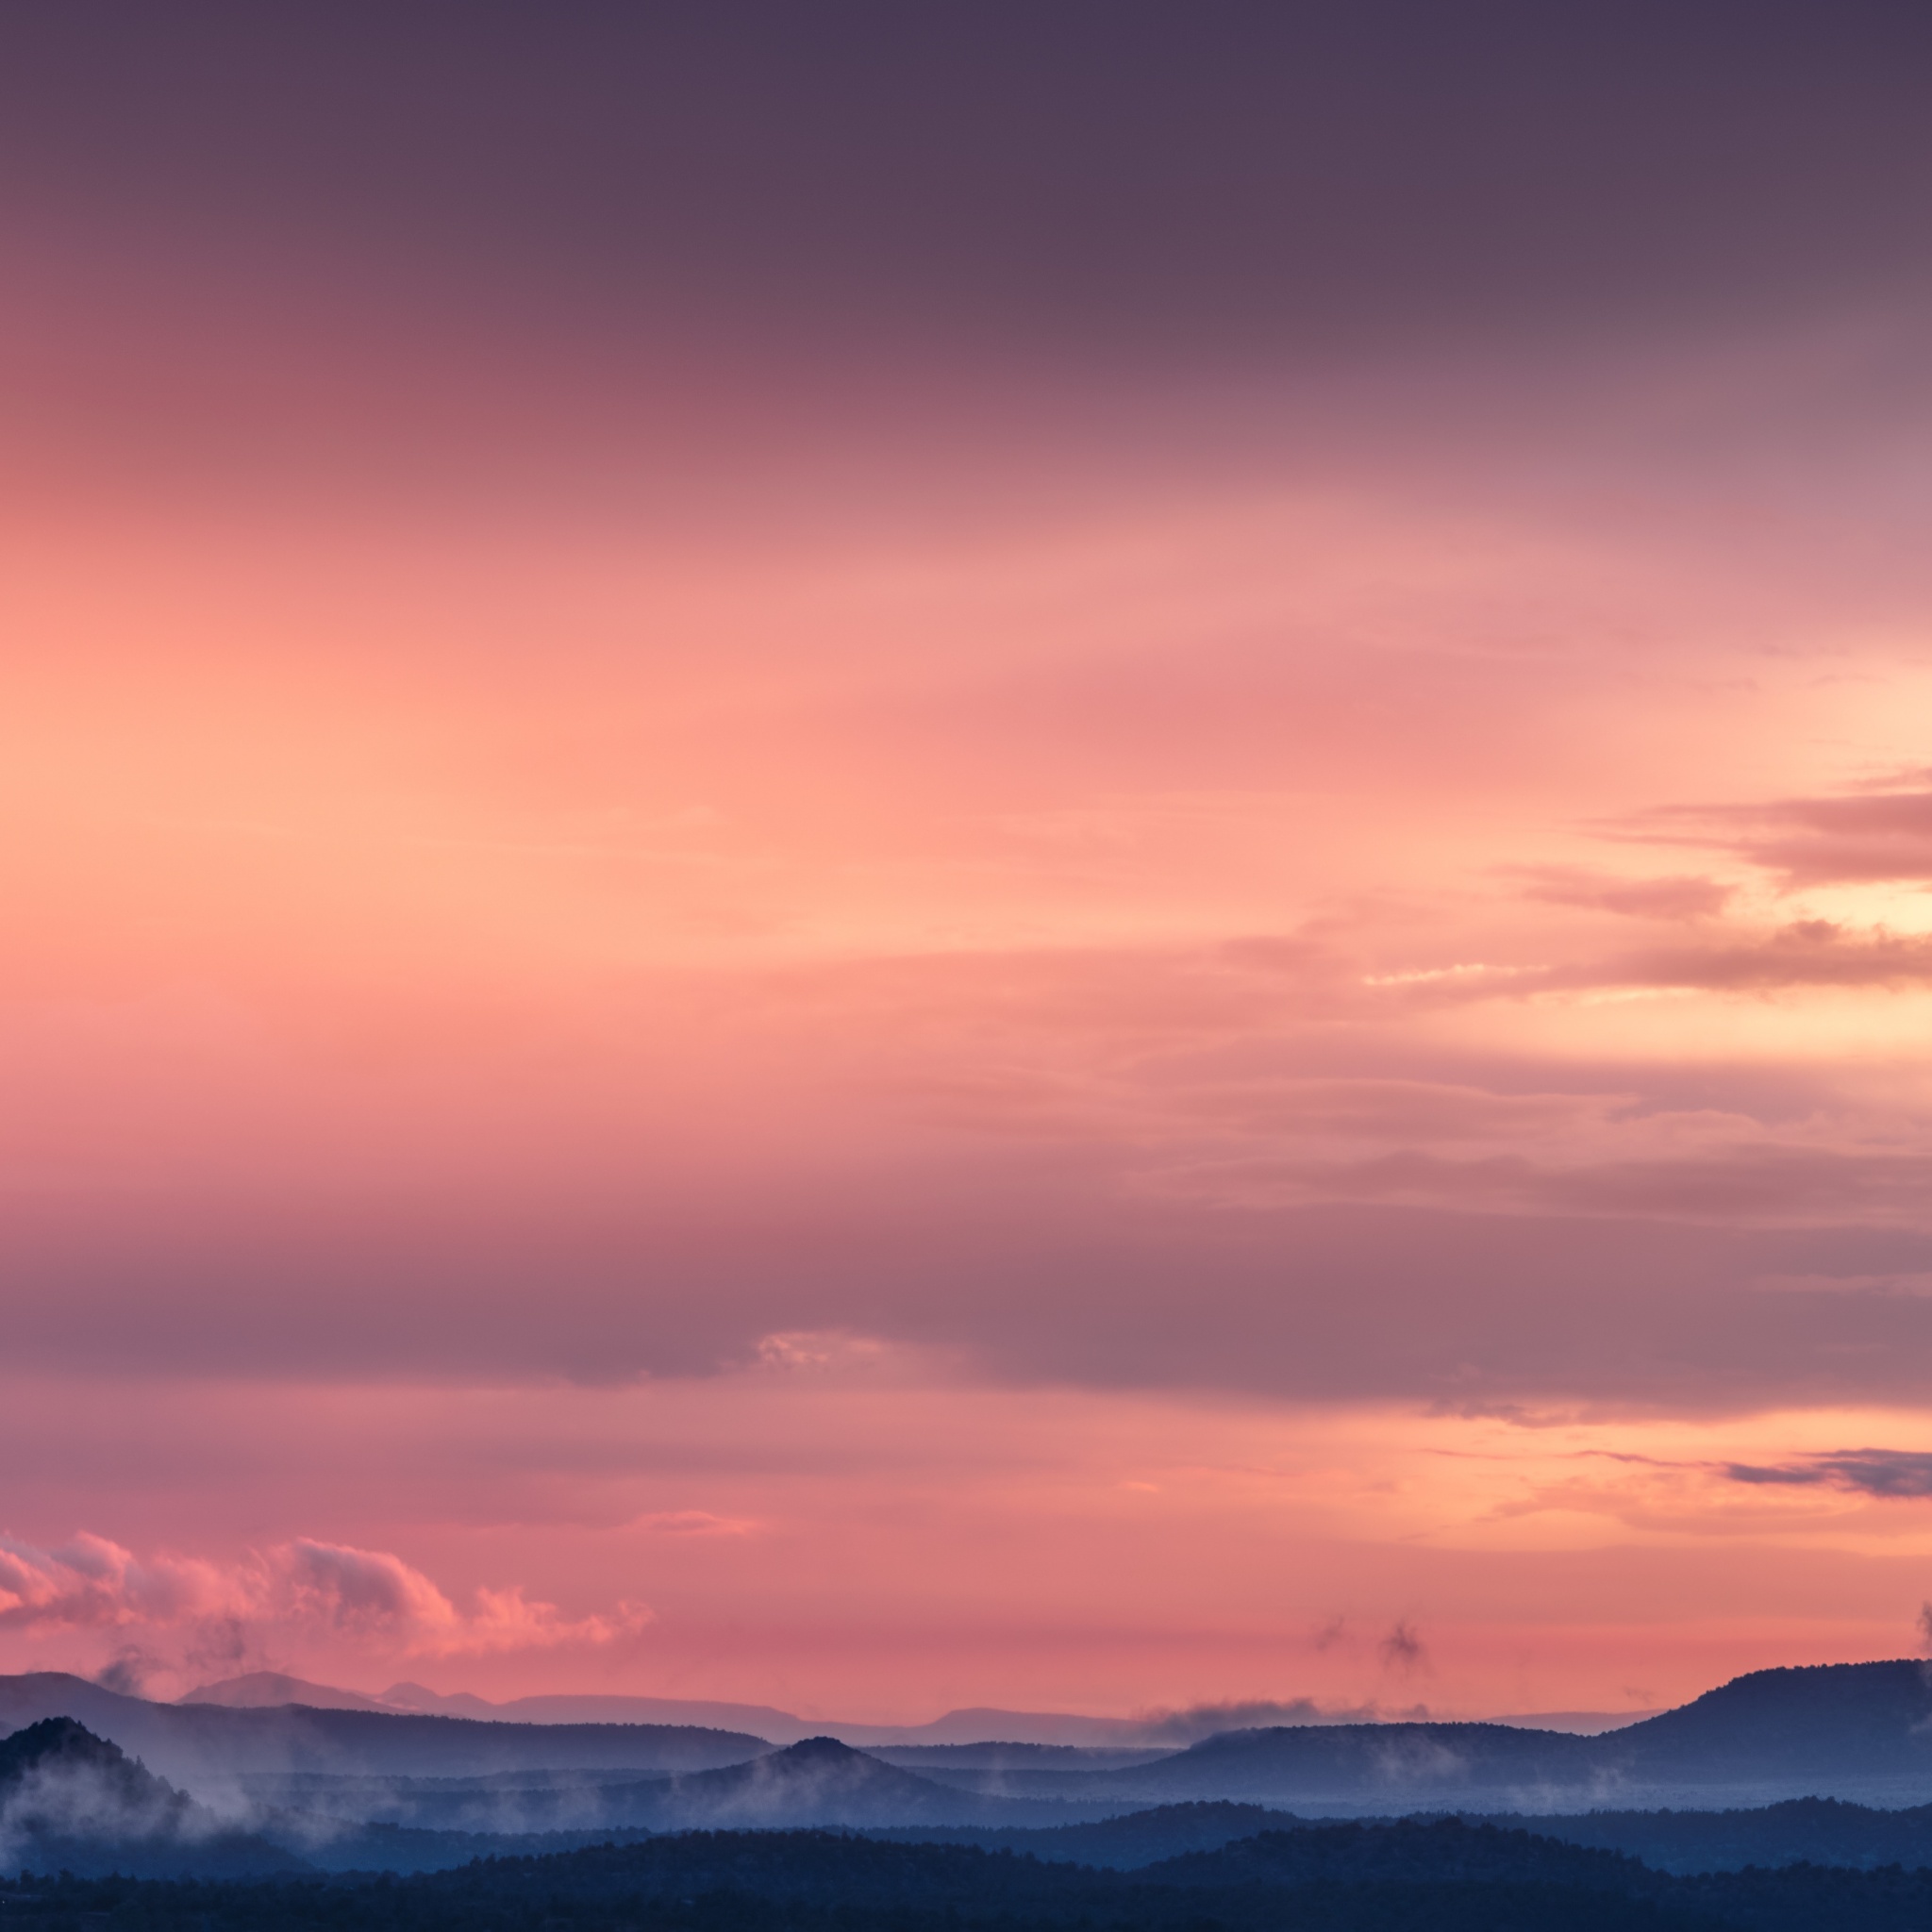 Pink sky Wallpaper 4K, Sunset, Mountains, Landscape, Fog, Clouds, Dusk, Nature